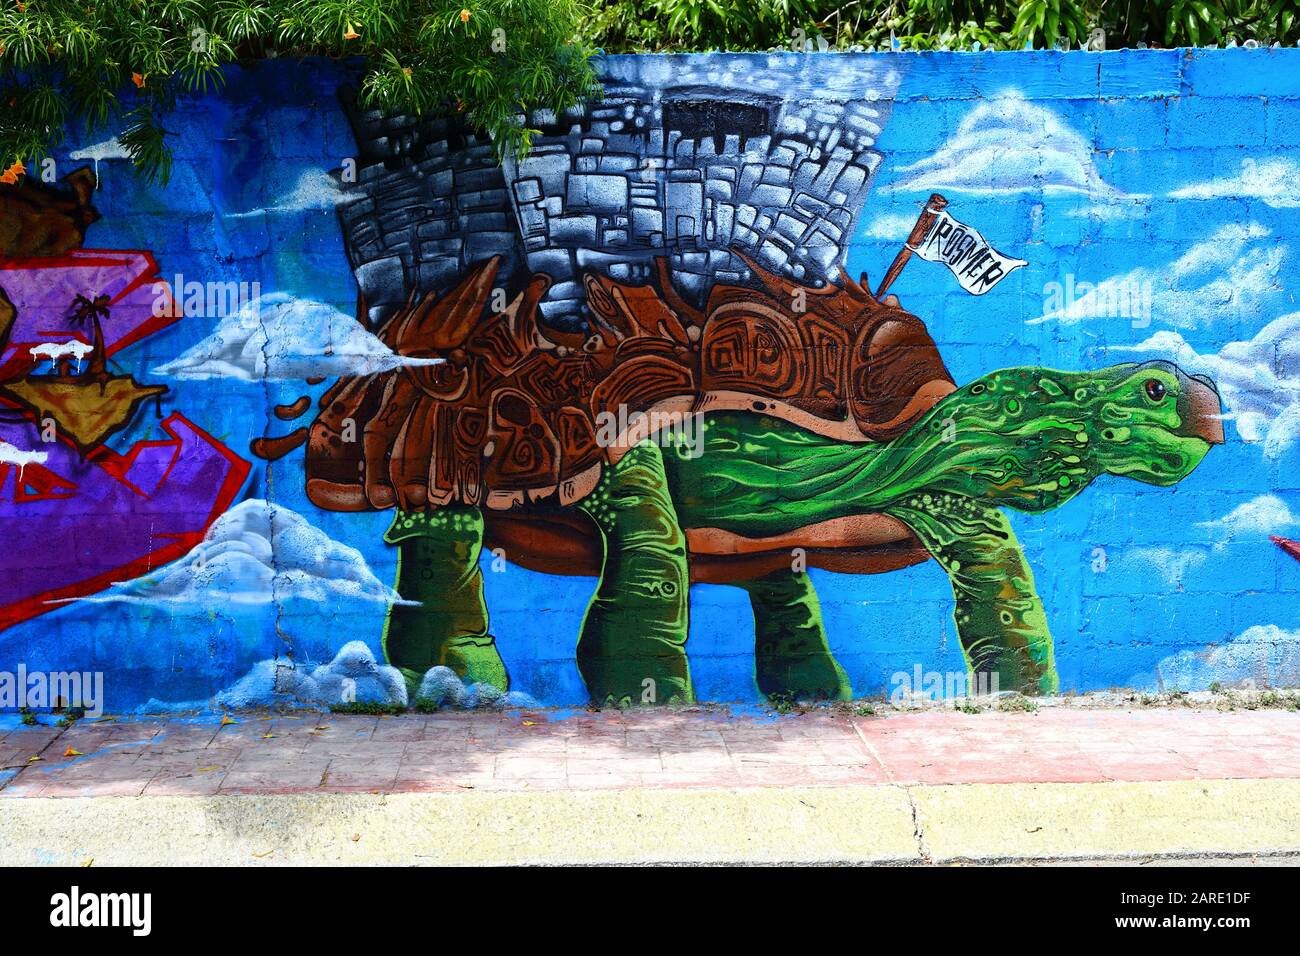 Bunt bemalte Graffiti-Grafiken im indigenen und Maya-Stil zeigen eine Schildkröte mit Ruinen, die auf dem Rücken an einer Cinderblockwand in Bacalar, Mexiko aufragt. Stockfoto